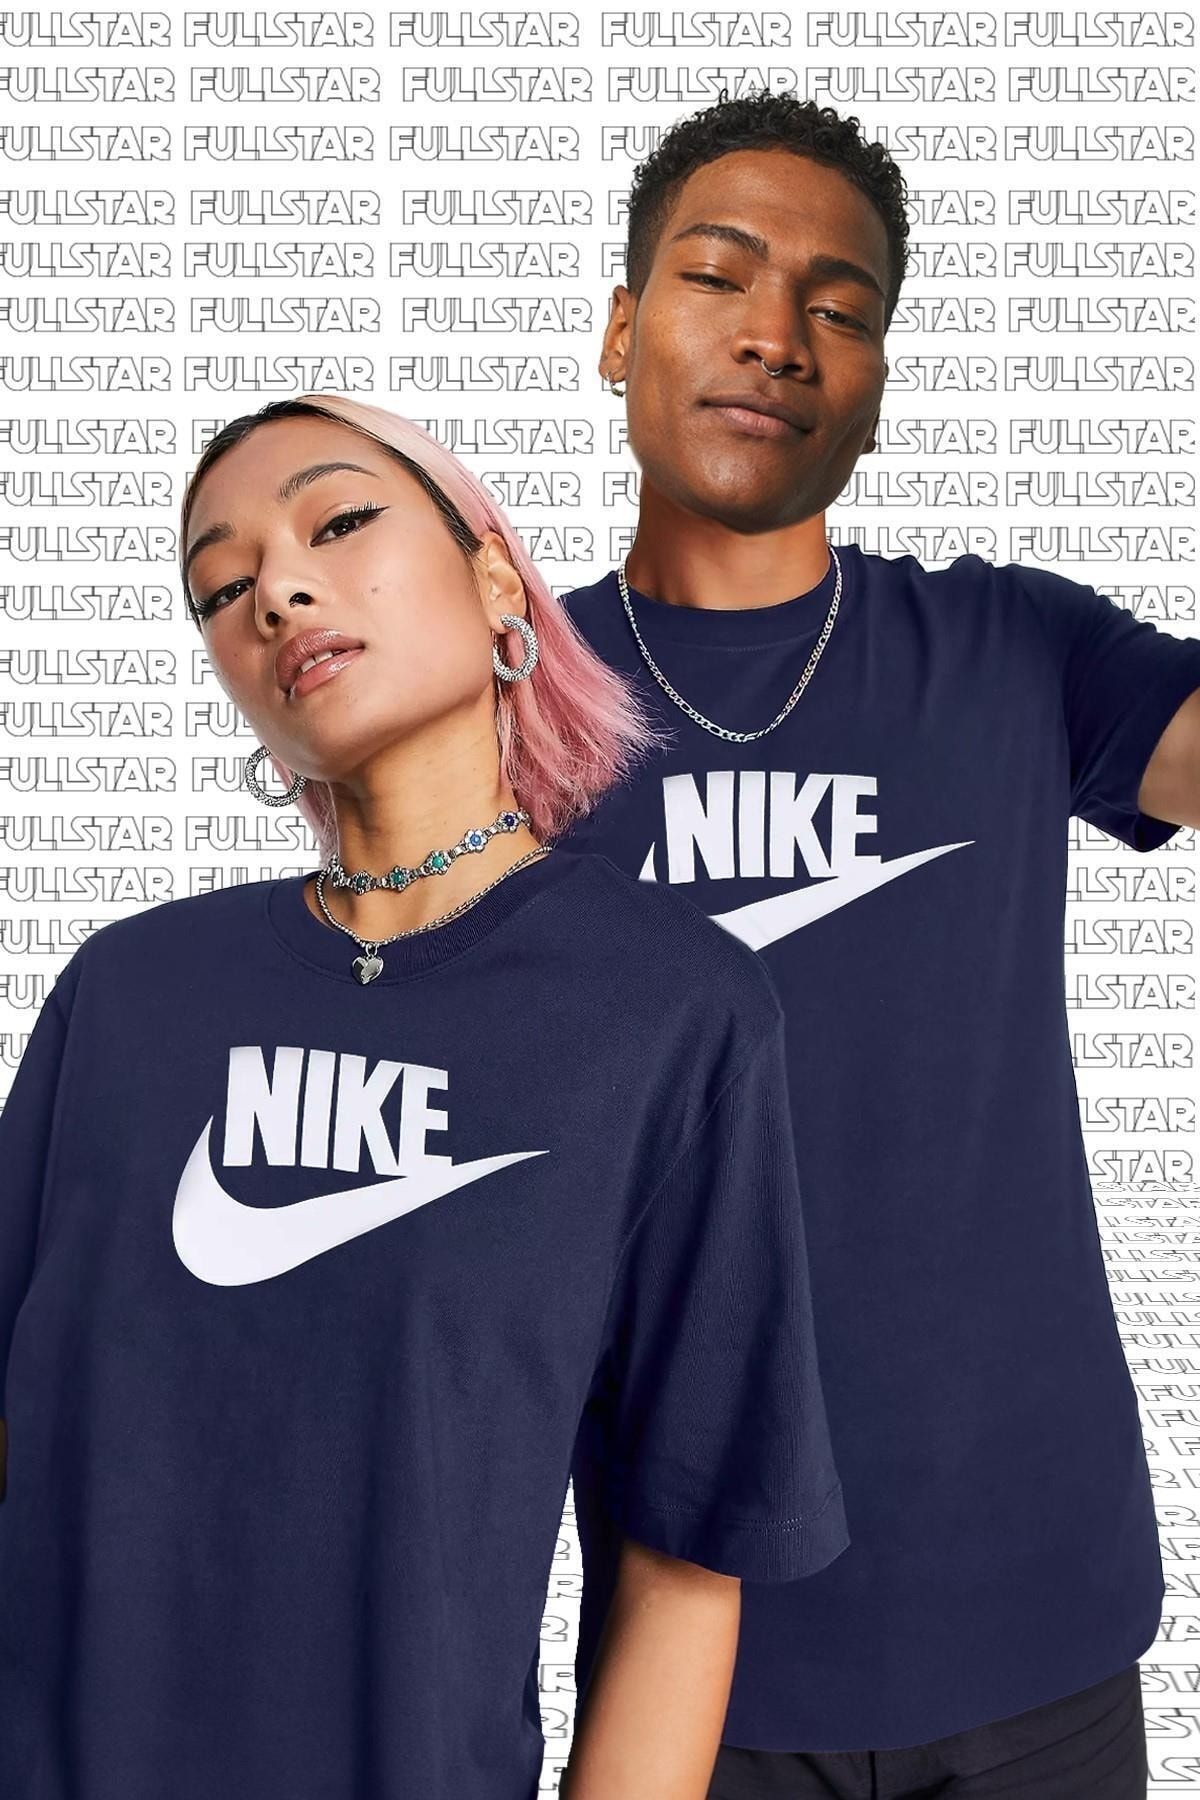 Nike Sportswear Futura Swoosh Logo Tee T Shirt Unisex Baskılı Tişört Lacivert